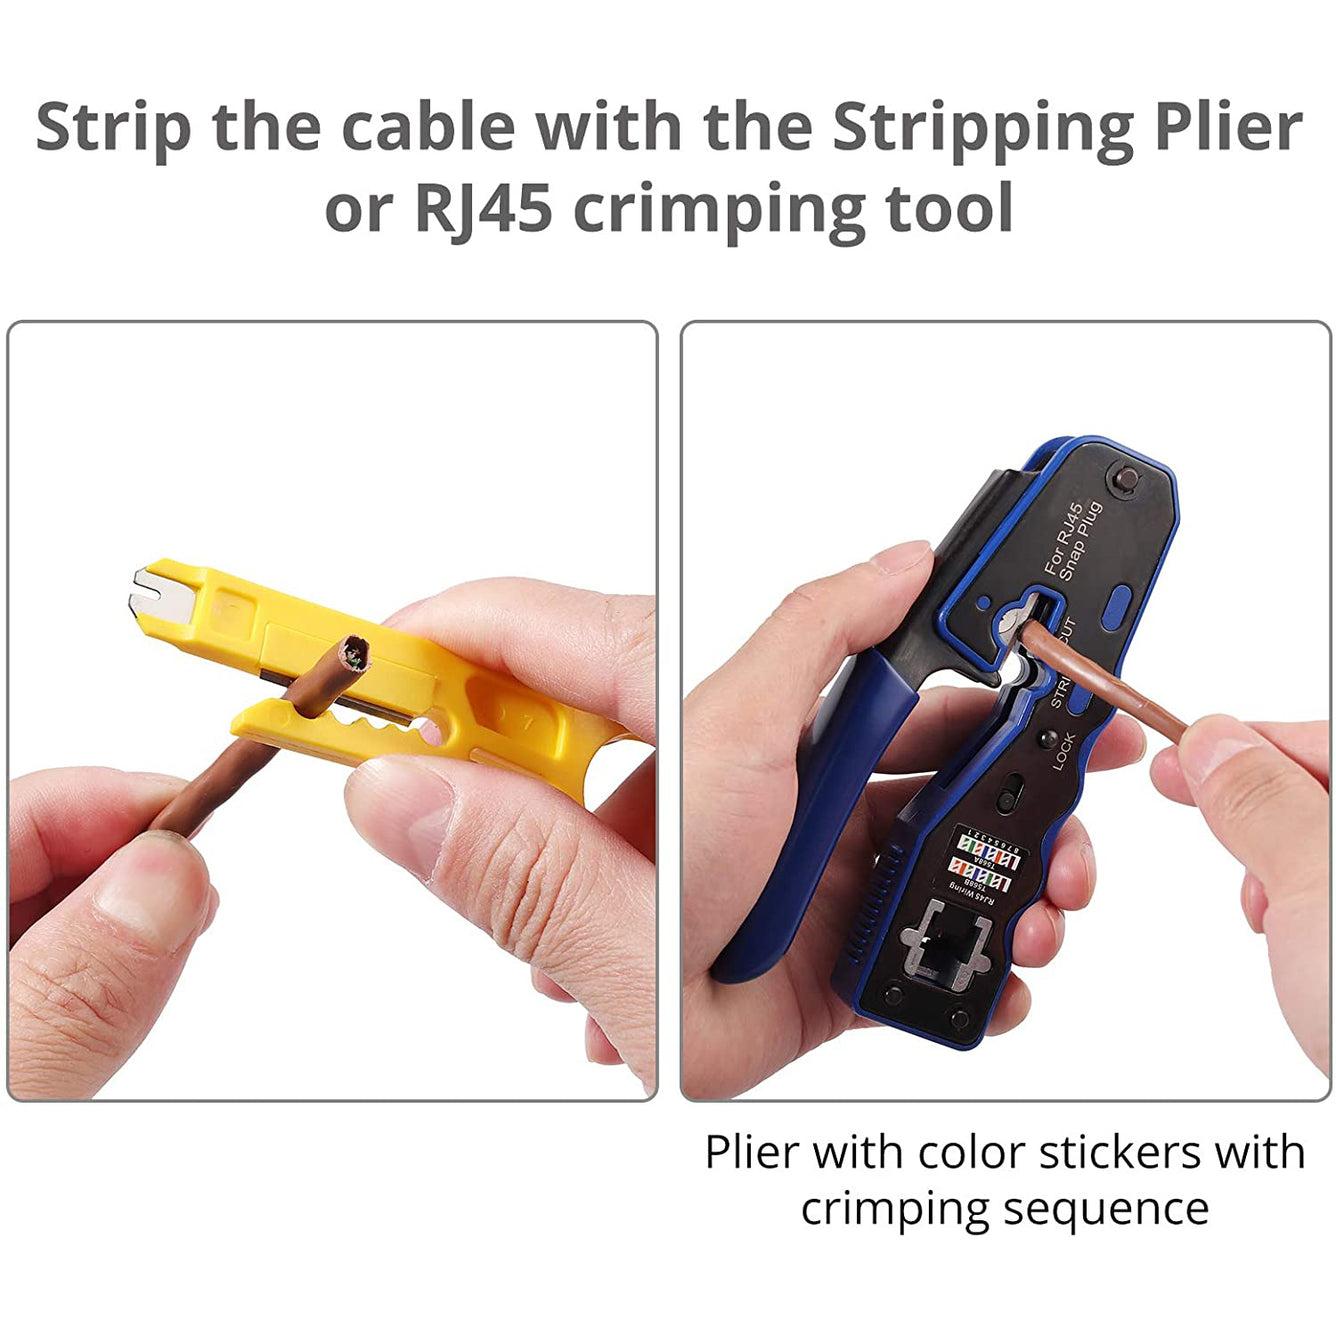 Proster RJ45 Crimp Tool Set All-in-one RJ45 Crimping Tool Kit